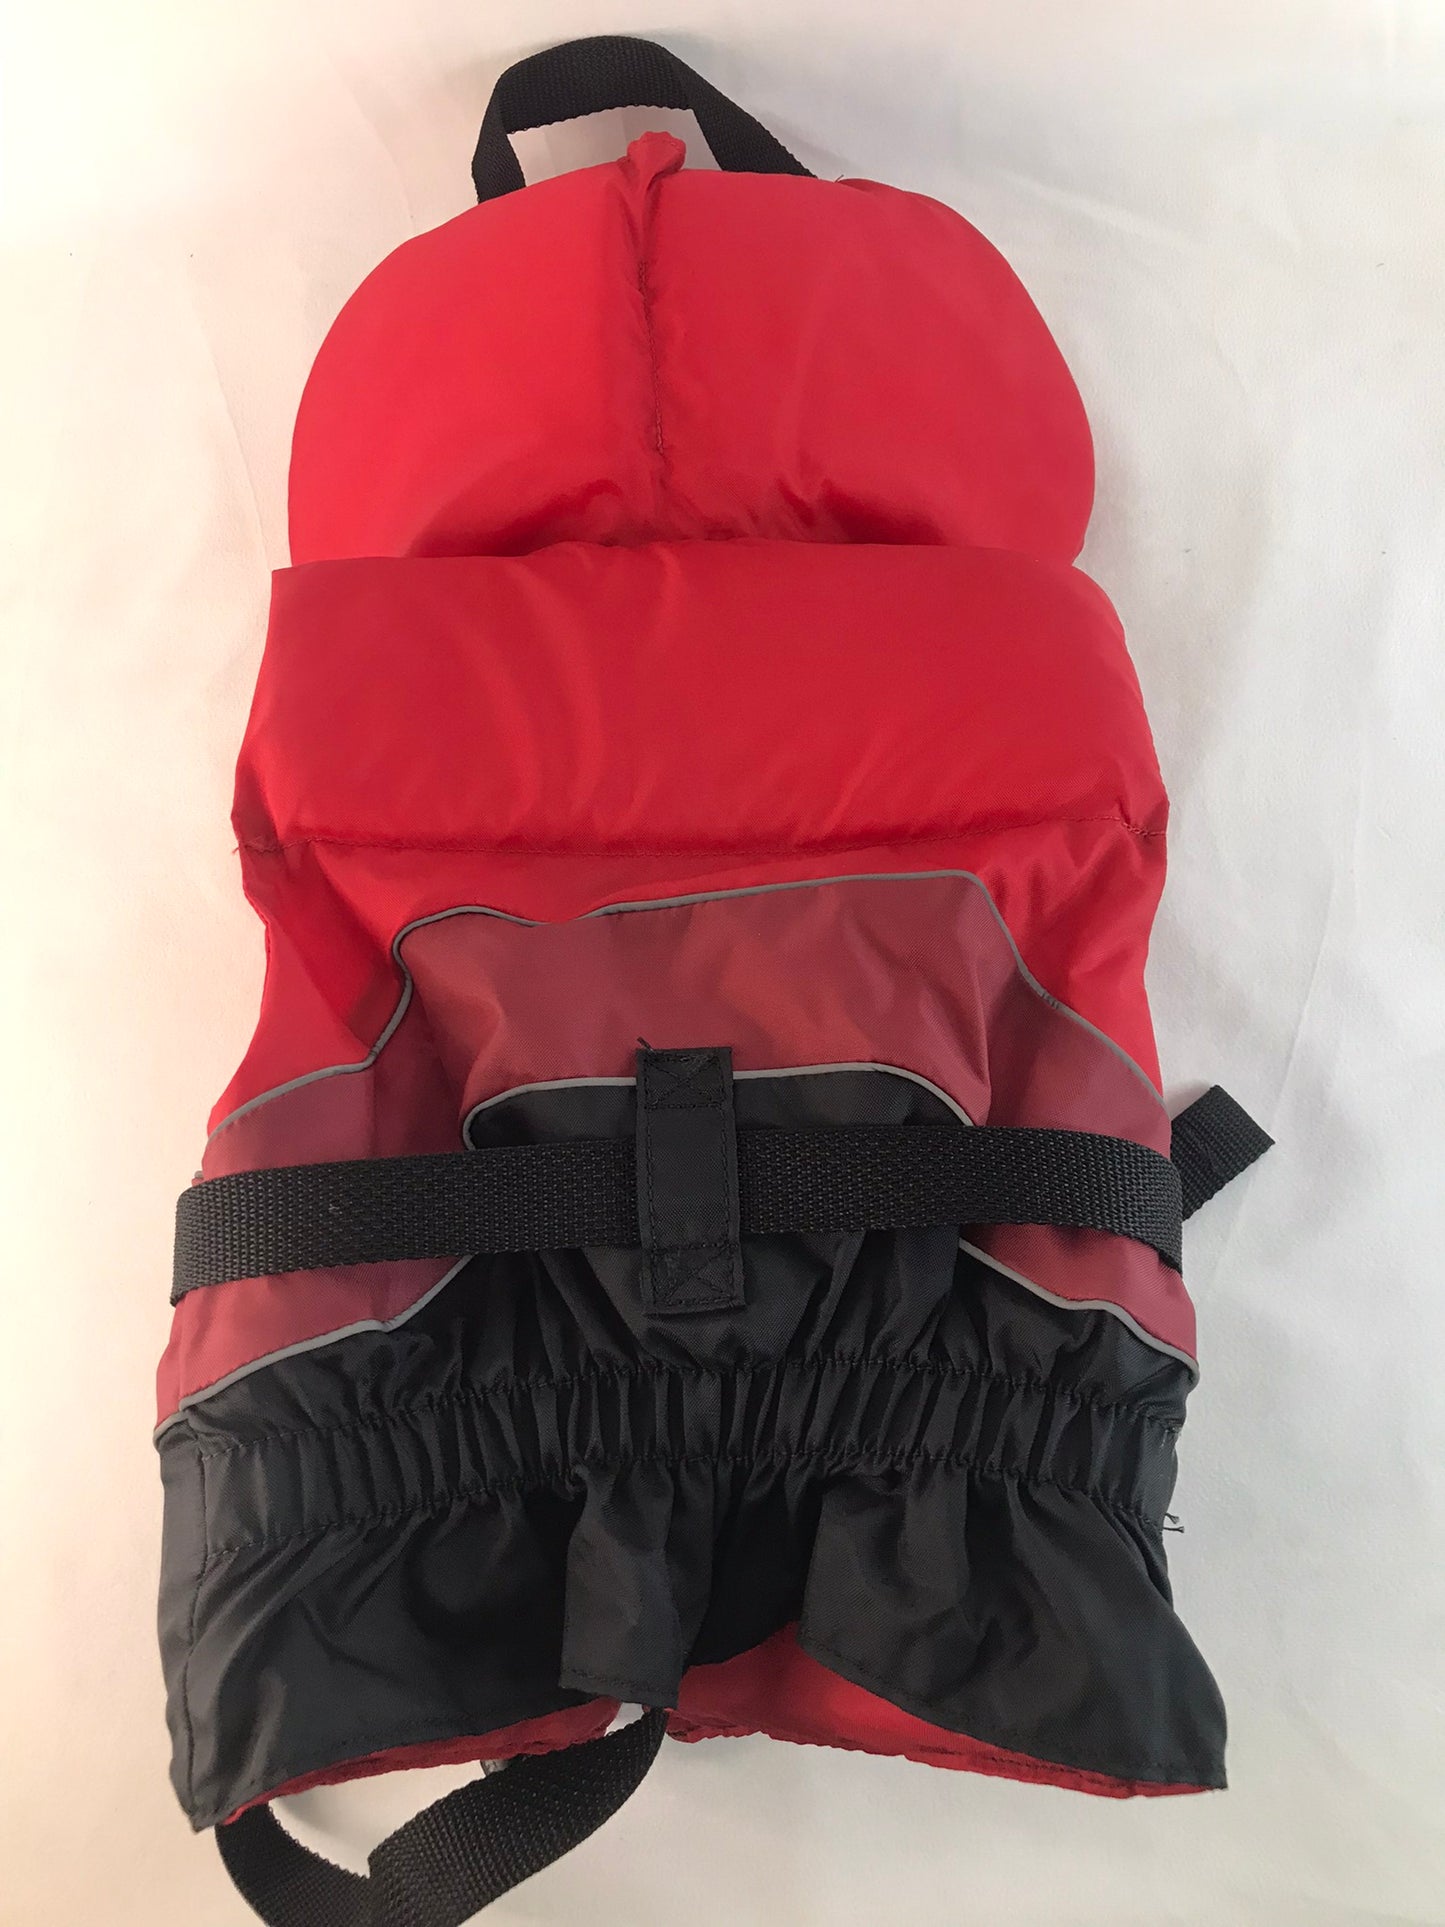 Life Jacket Child Size 30-60 lb Level Six Red Brick Black